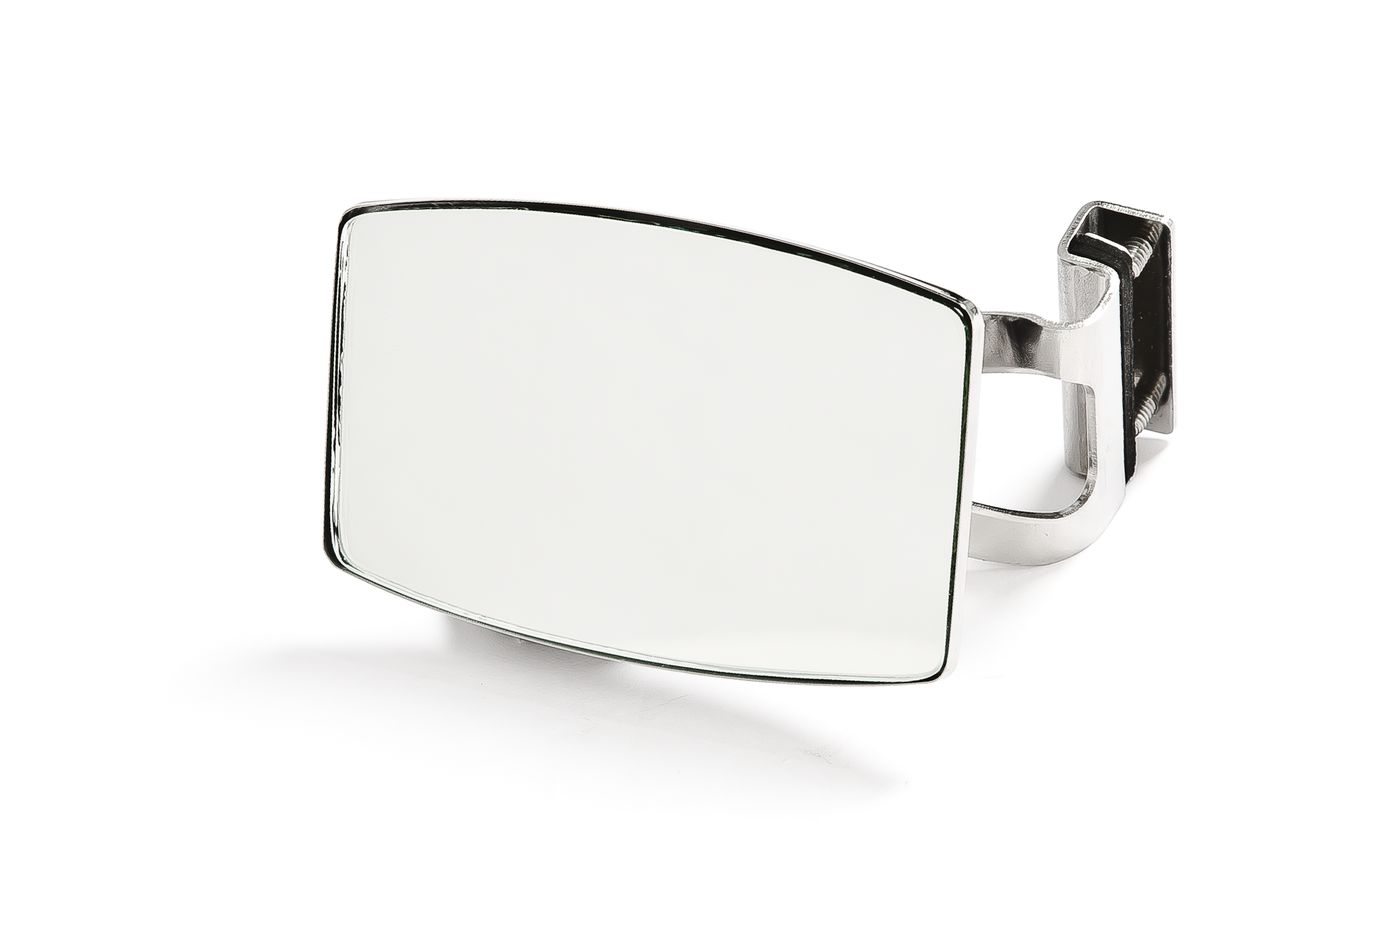 Klemmspiegel
Clamp on mirror
Rétroviseur par serrage
Klemspiege